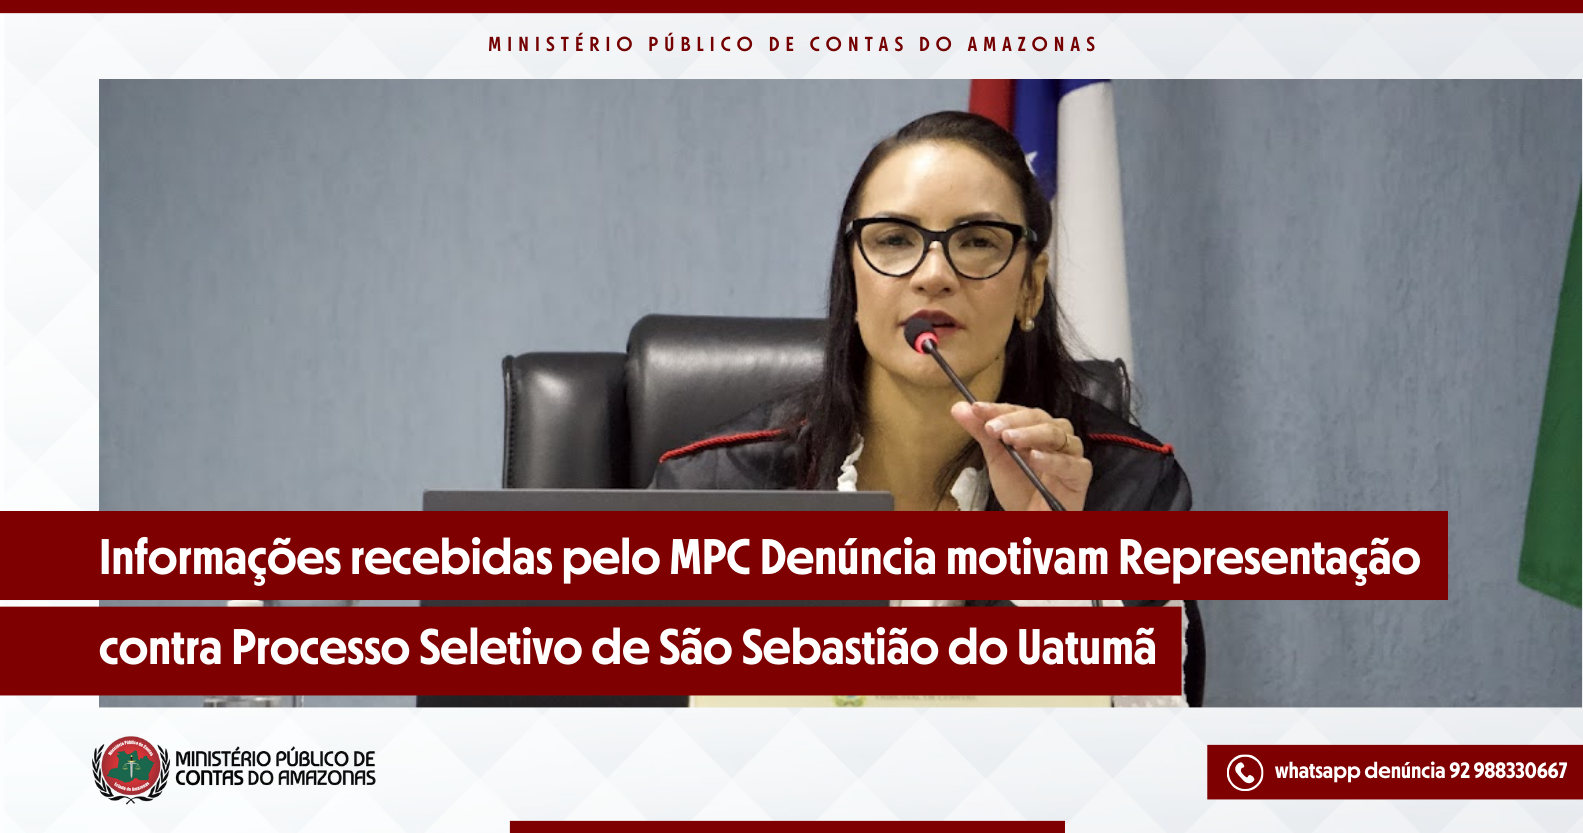 Informações recebidas pelo MPC Denúncia motivam Representação contra Processo Seletivo de São Sebastião do Uatumã